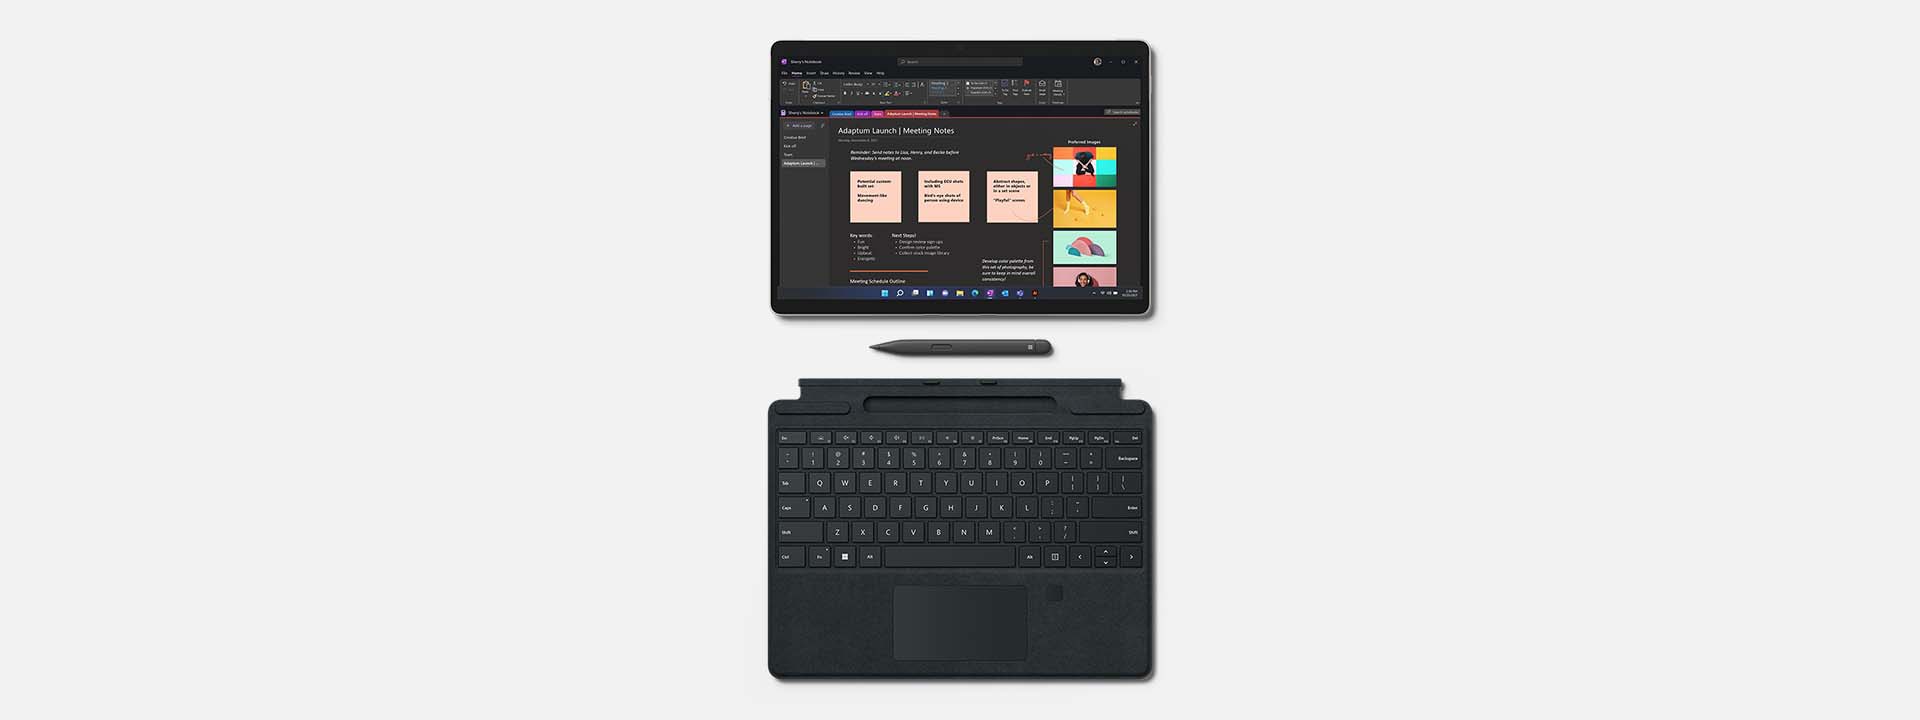 在平板模式下，将 Surface Pro 8 搭配 Surface Pro 特制版专业键盘盖 和 Surface 超薄触控笔 2 使用，以突出便携性